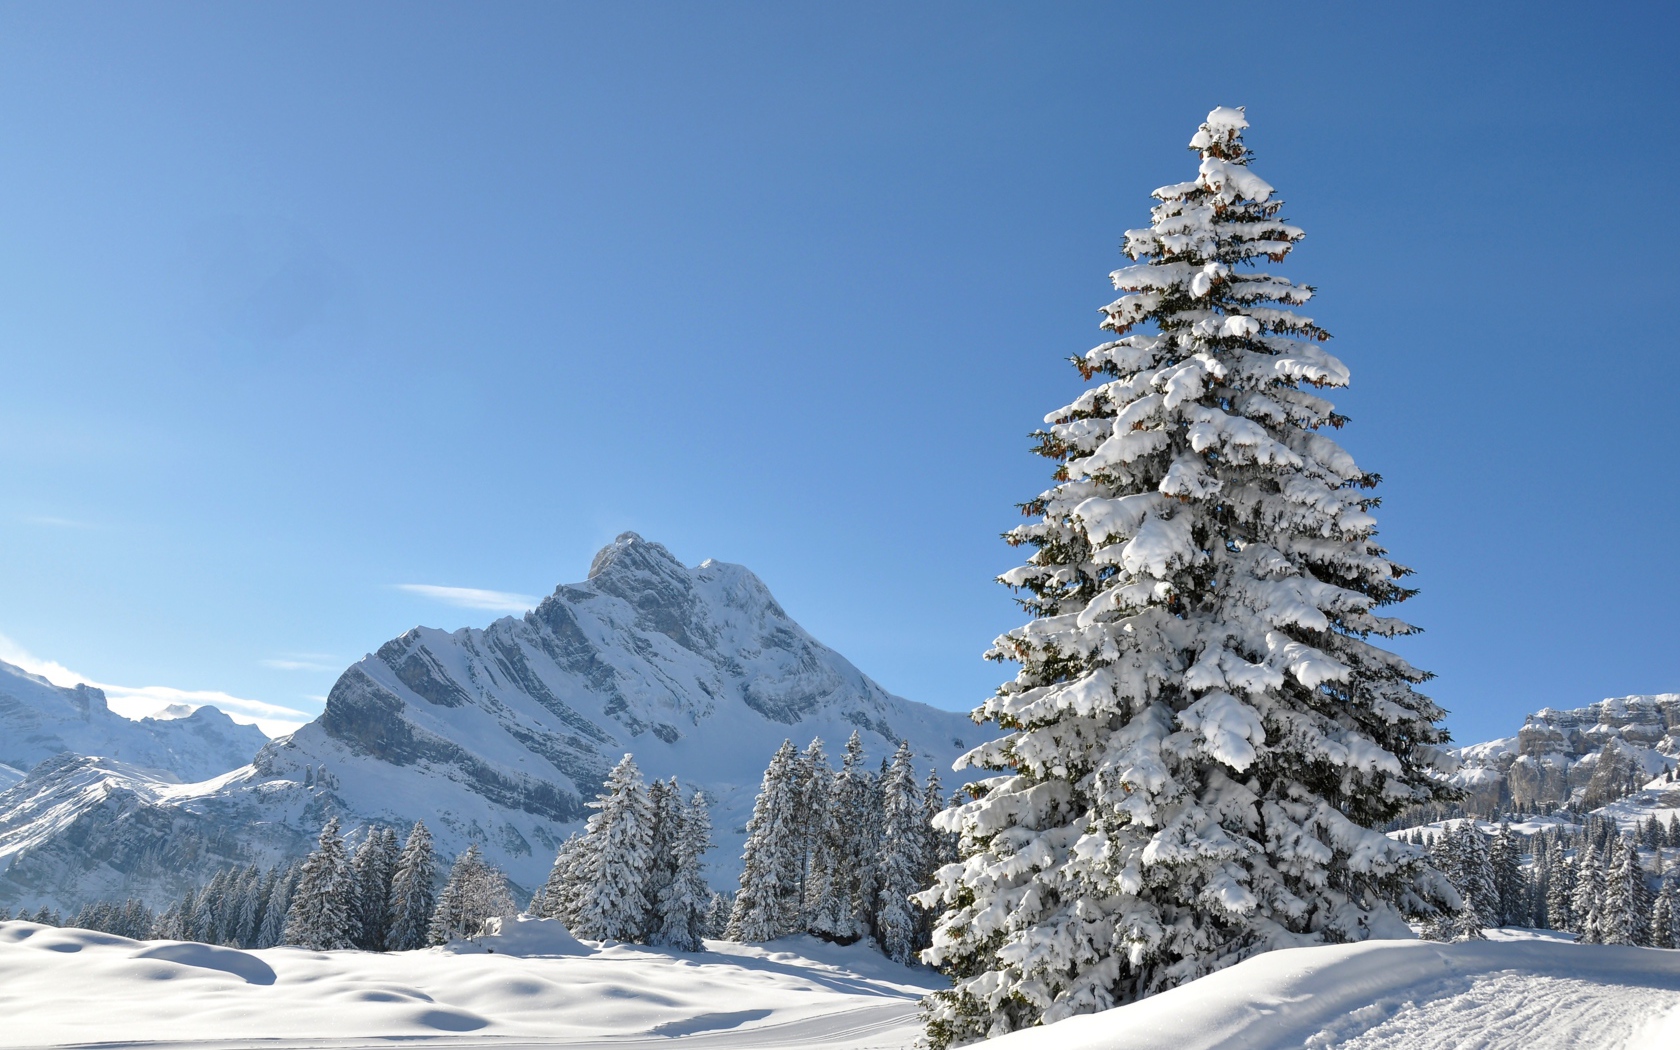 Высока покрытая снегом ель под голубым небом на фоне горы